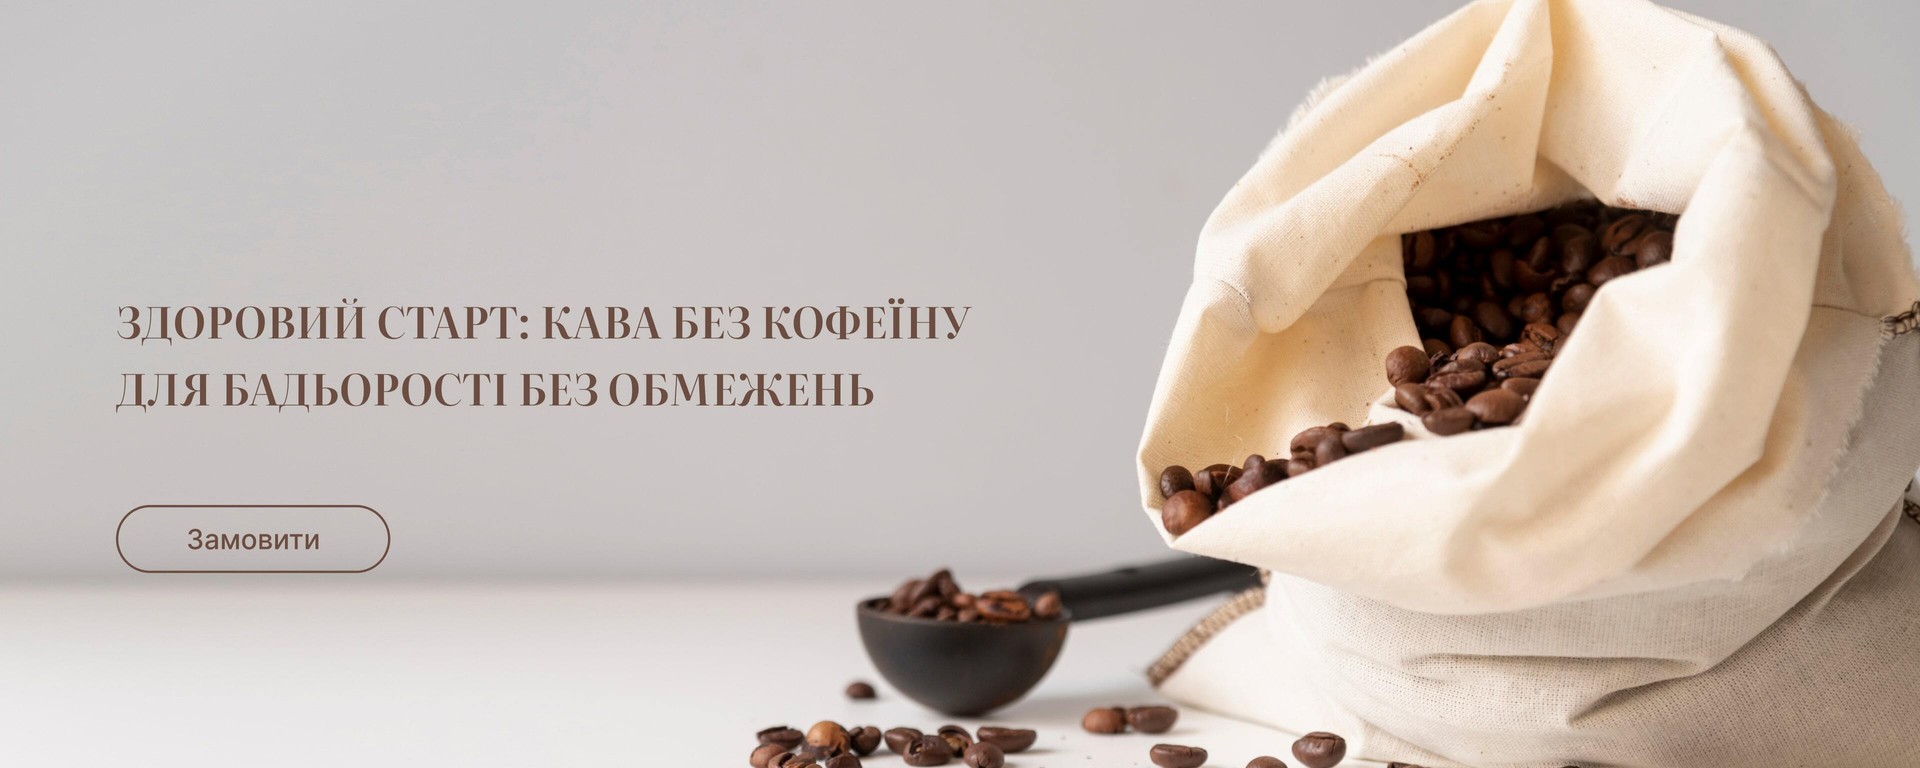 Купити каву без кофеїну від виробника Royal Life